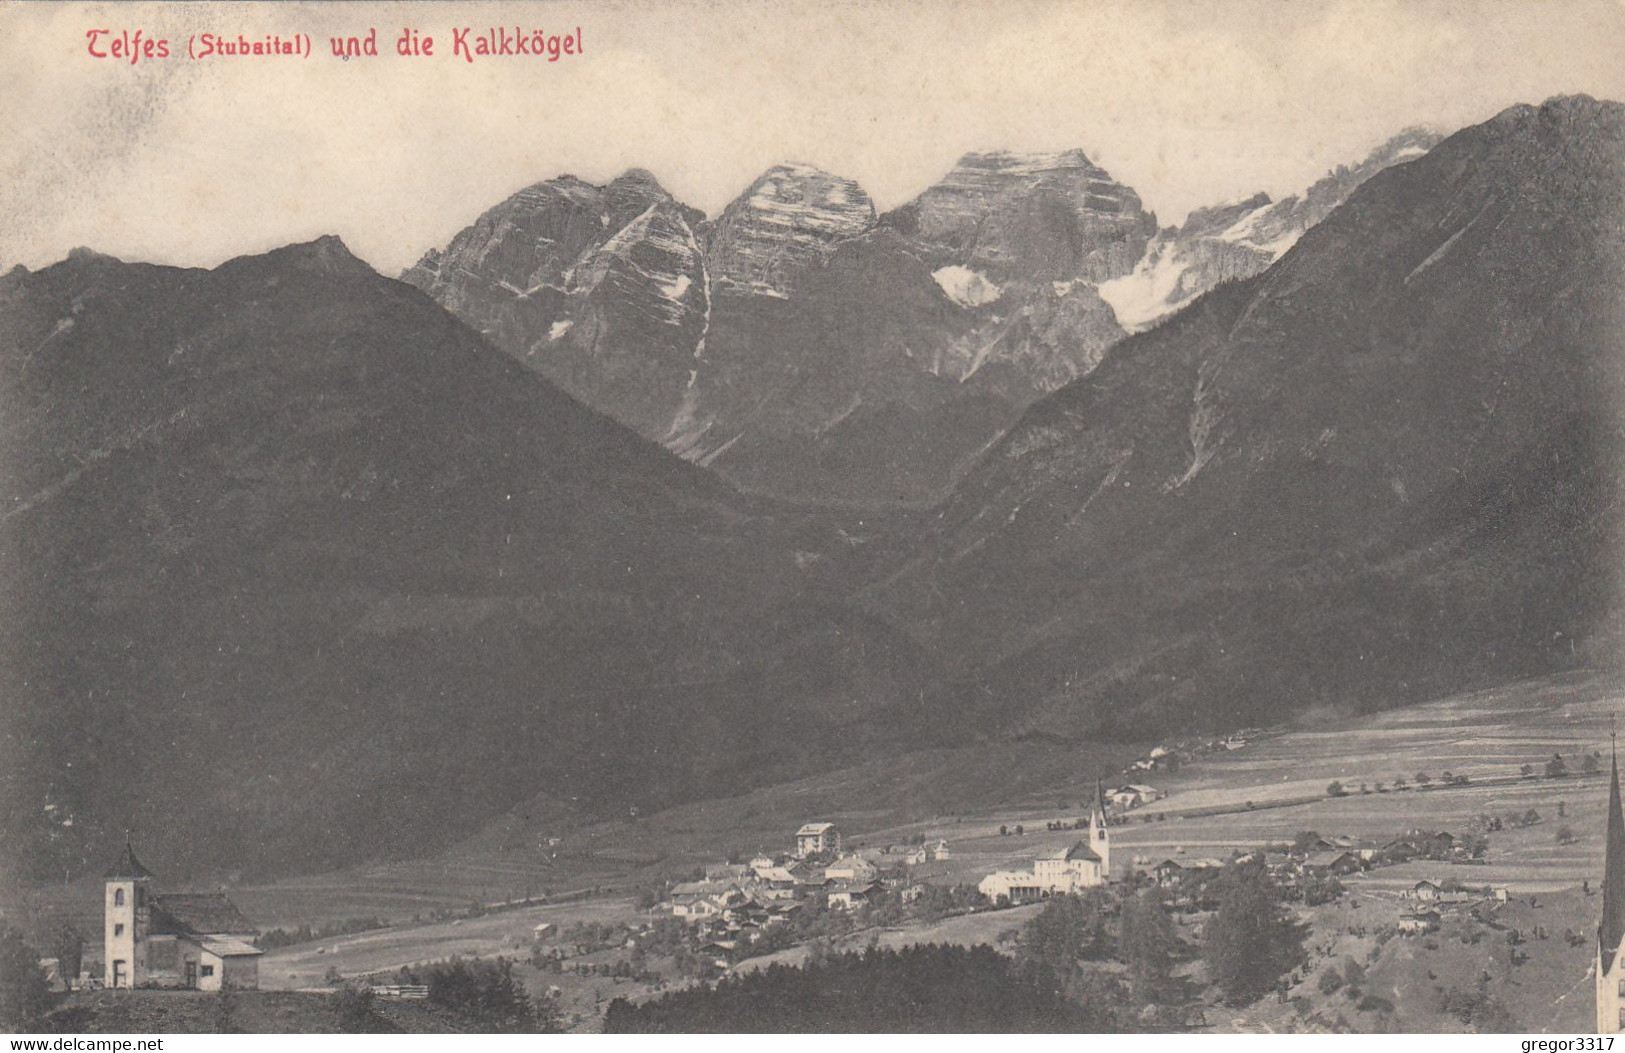 77) TELFS - Stubaital Und Die KALKKÖGEL - Kleine Kapelle - Kirche Häuser - SEHR ALT ! 1905 - Telfs